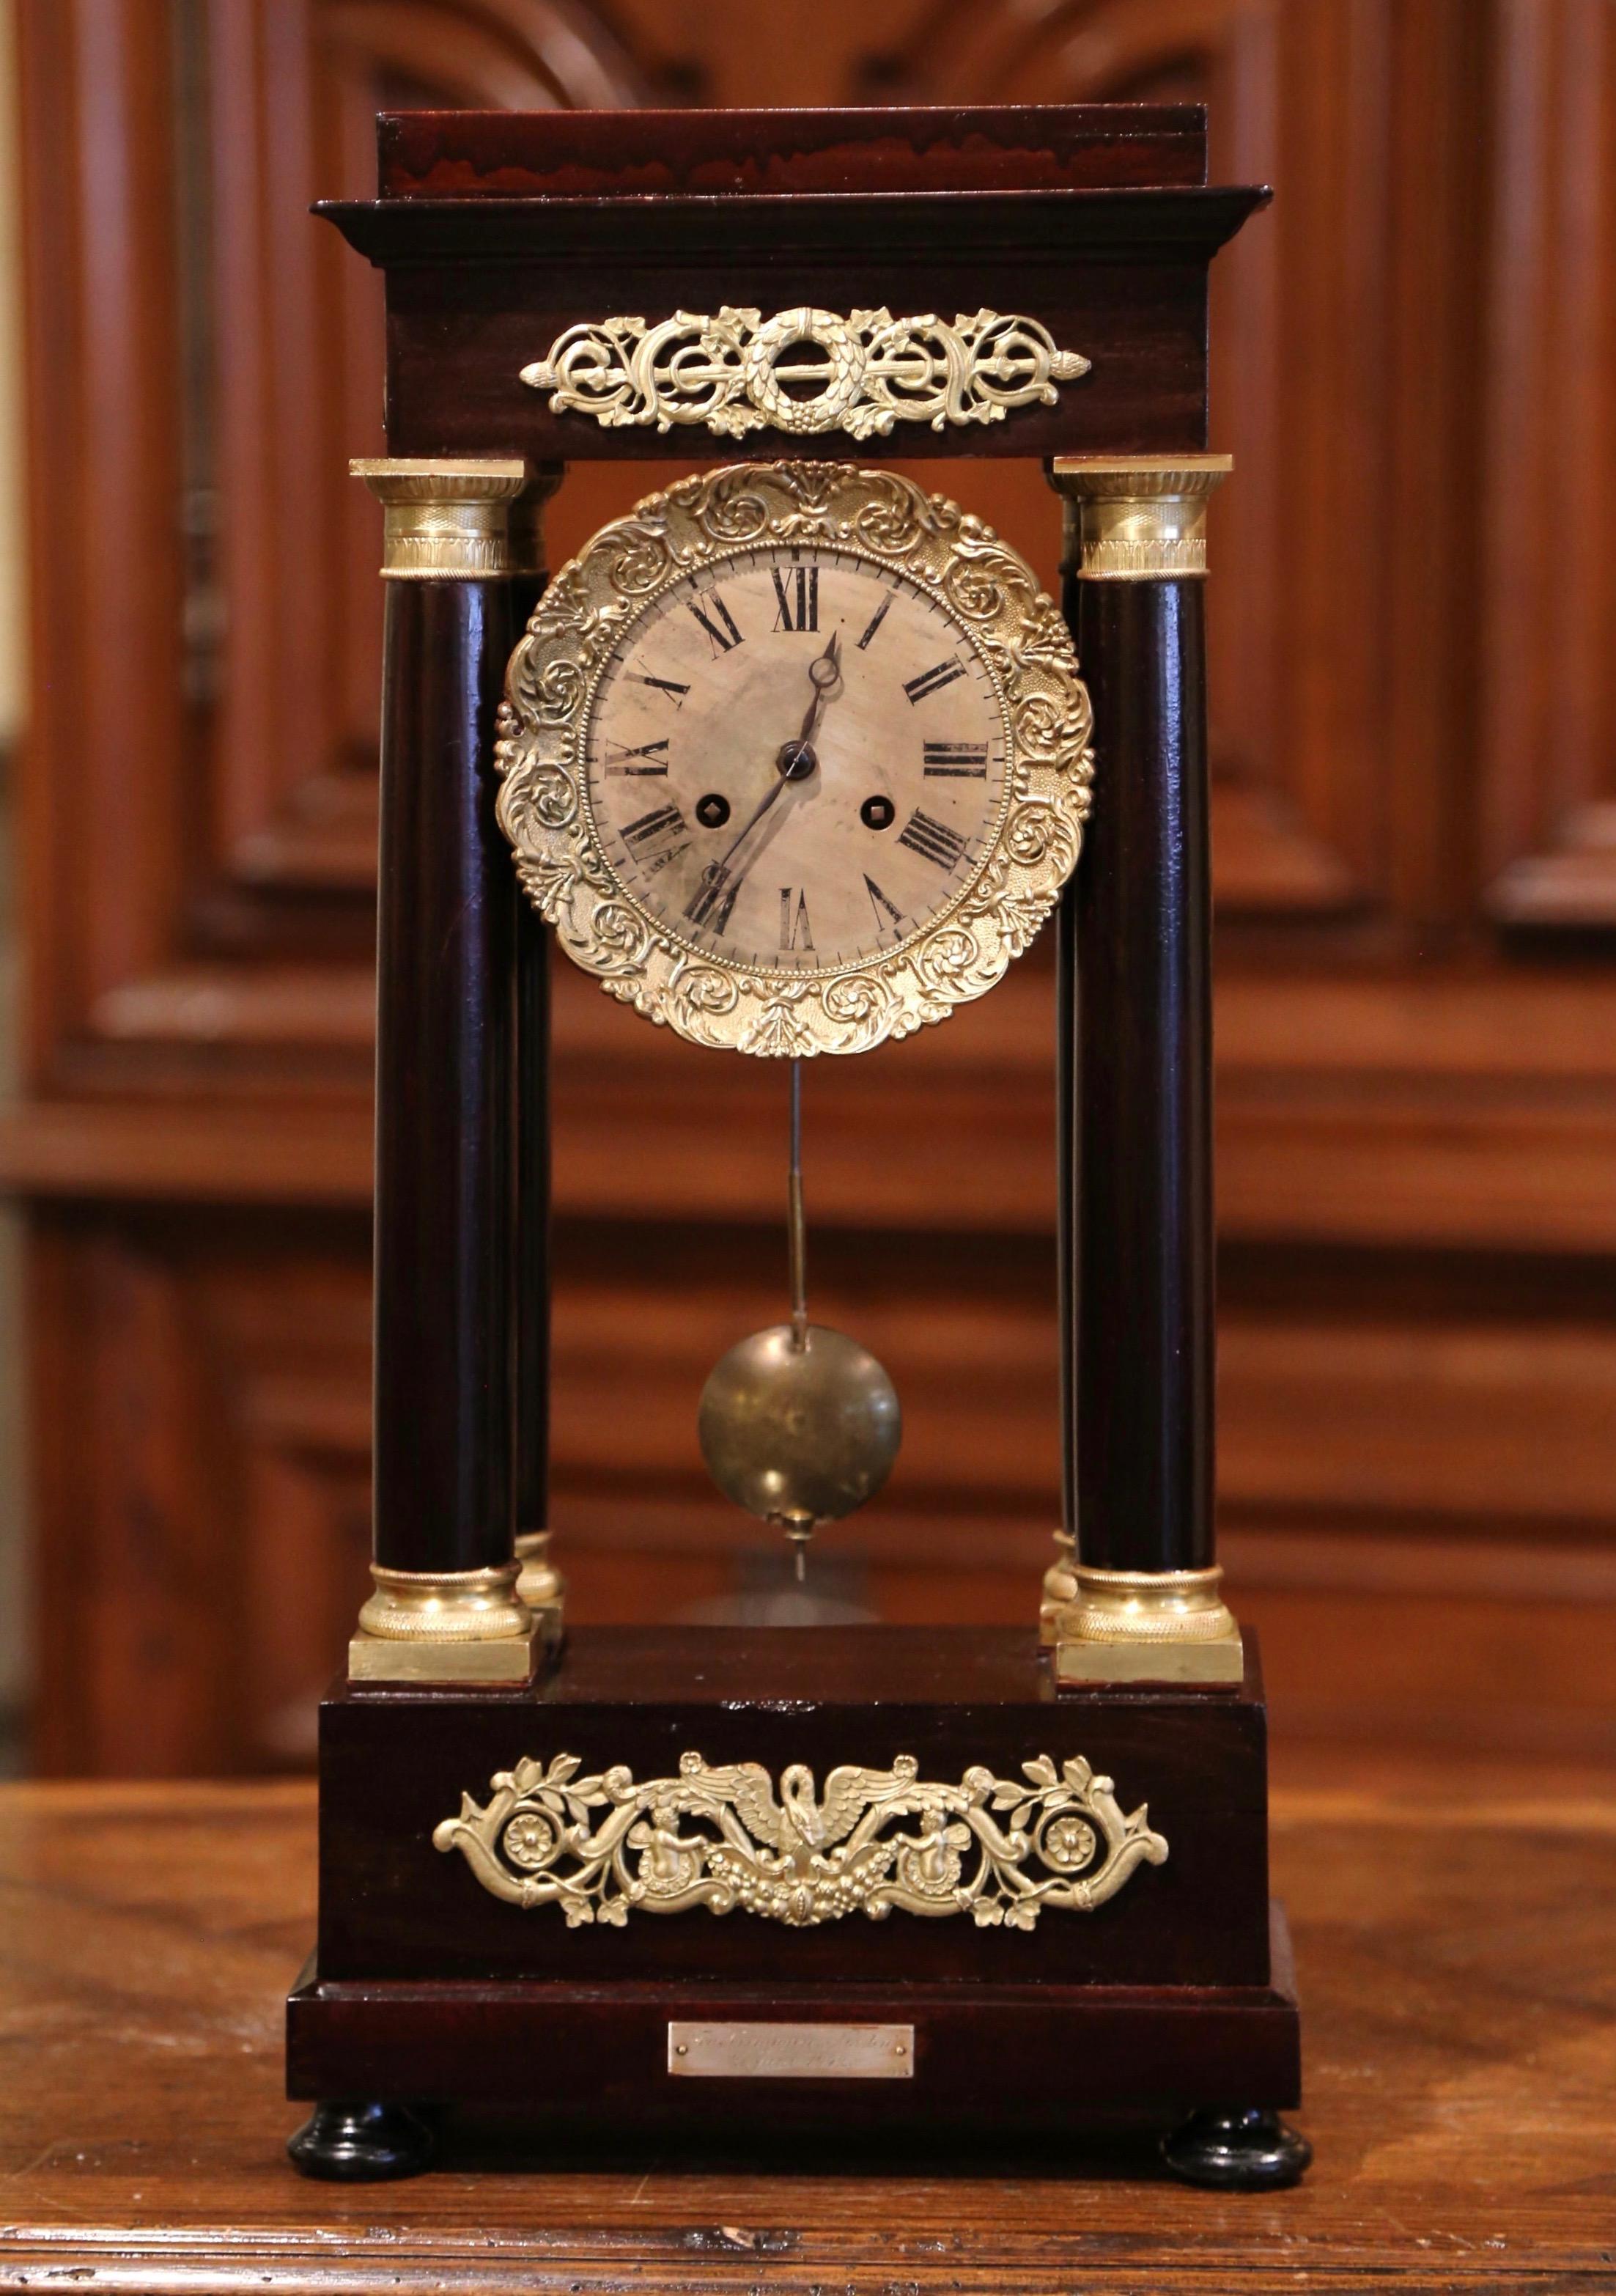 Gardez l'heure dans votre bureau, votre cabinet de travail ou sur votre cheminée grâce à cette élégante horloge potico antique. Fabriquée en France vers 1860 et reposant sur des pieds en chignon au-dessus d'une base rectangulaire, cette horloge